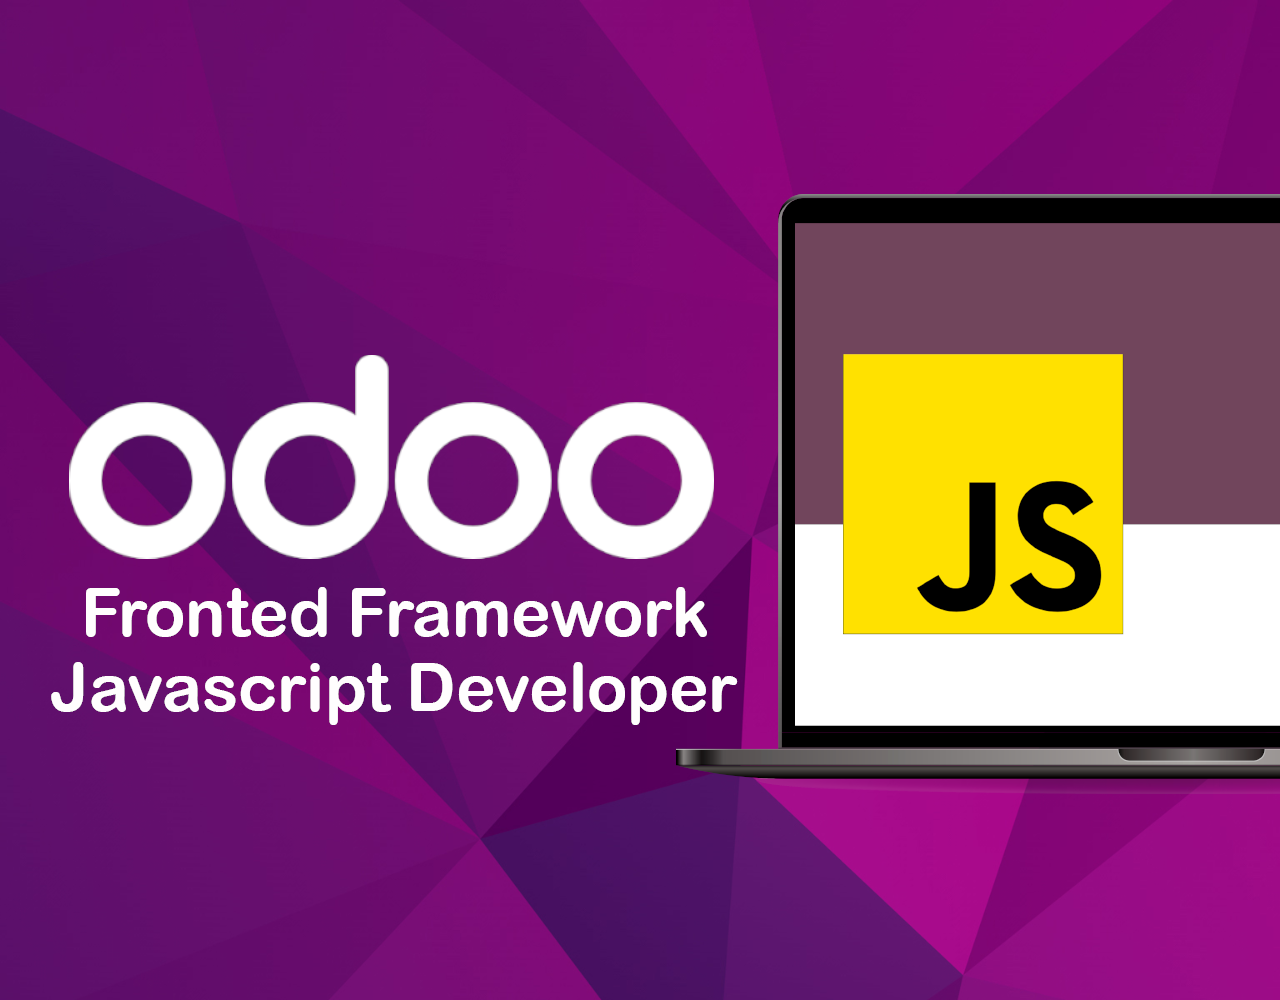 Odoo Frontend Framework Javascript Developer